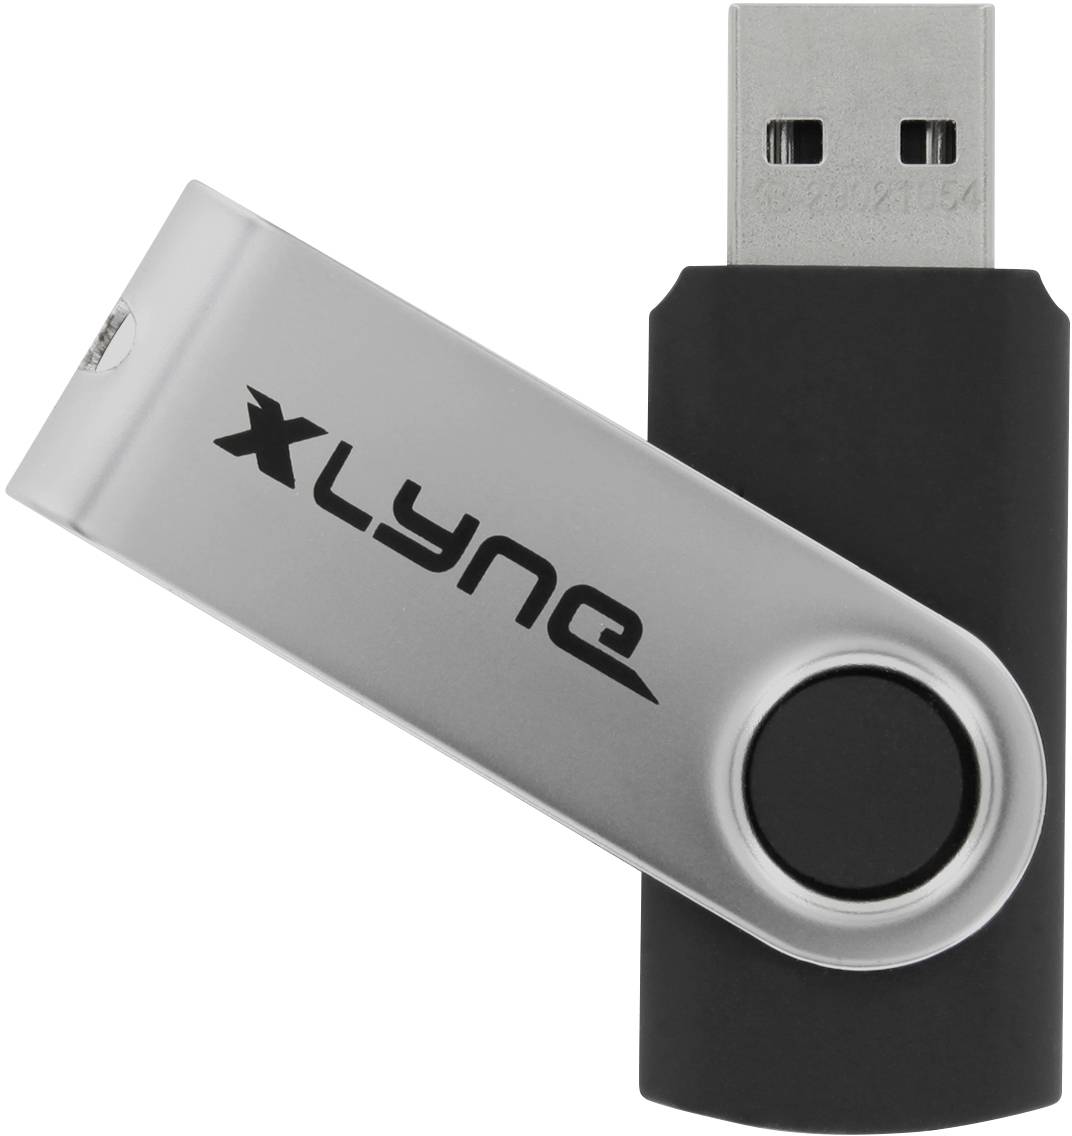 XLYNE SWG USB-Stick 128 GB Schwarz 177534-2 USB 3.0